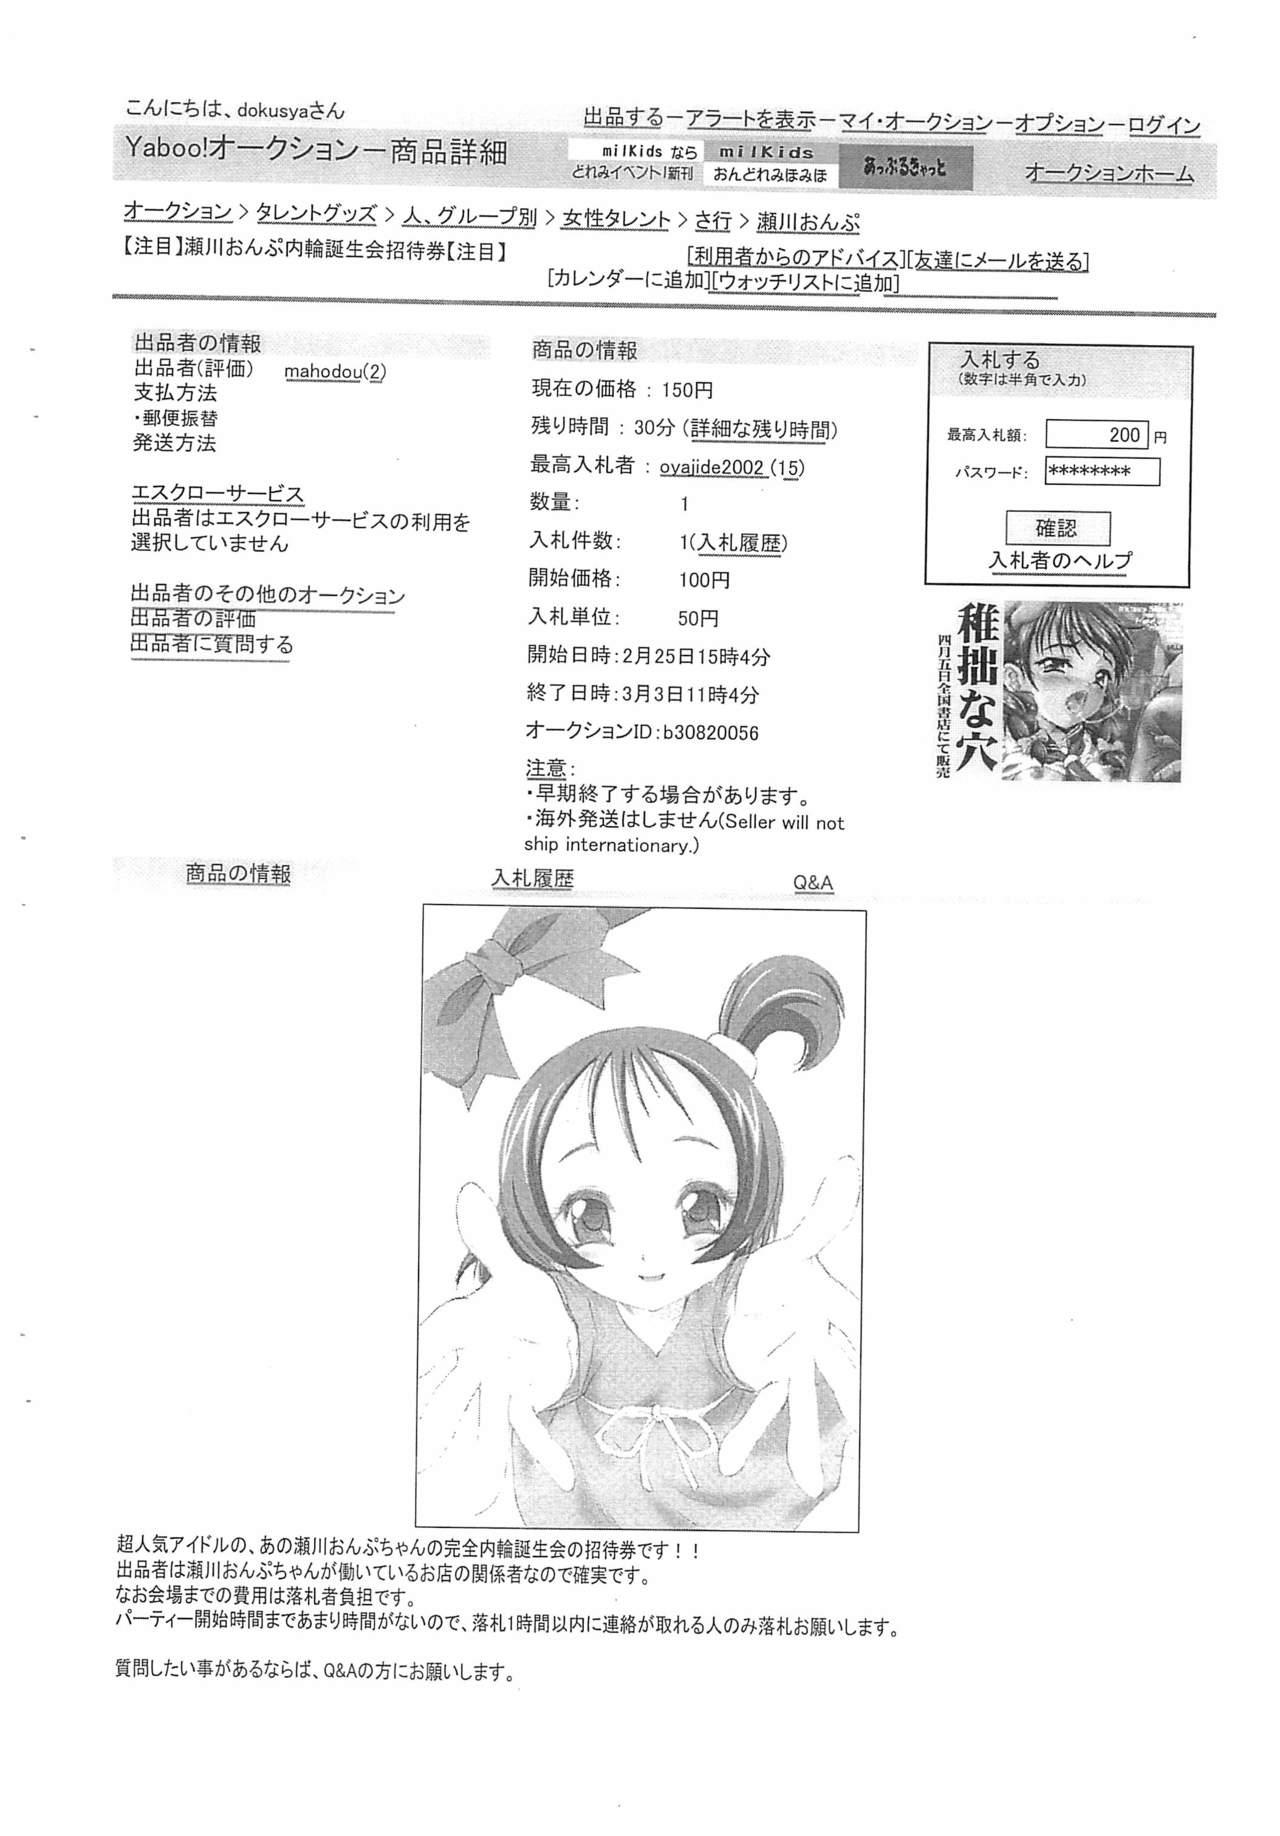 Creampie 11 - Ojamajo doremi | magical doremi Solo Girl - Page 2